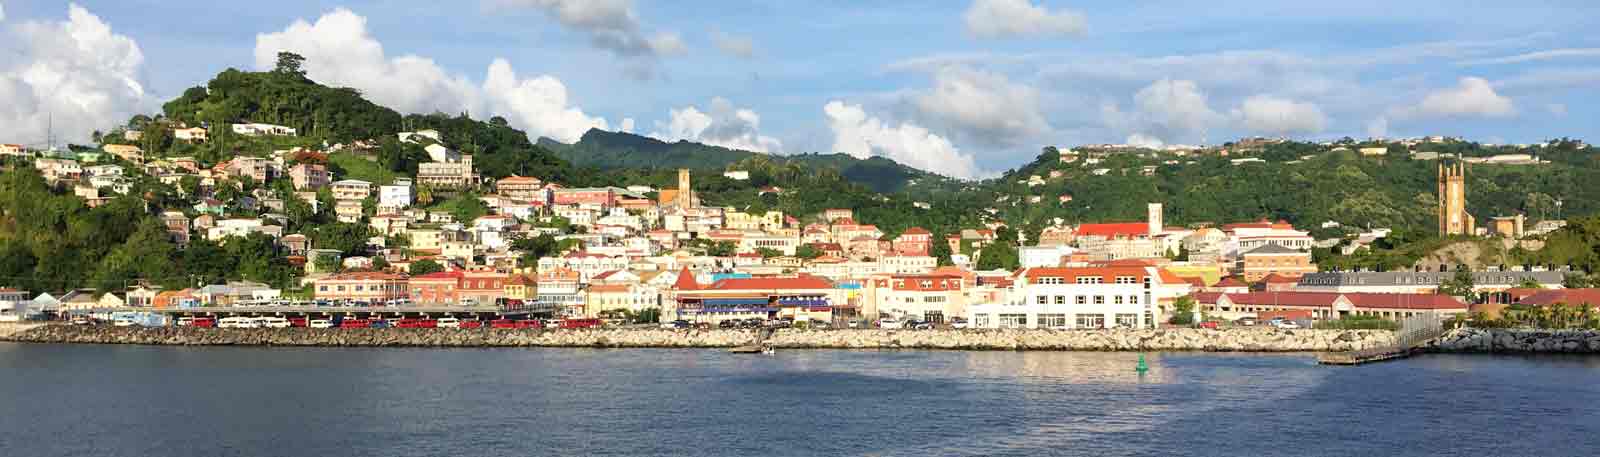 Panoramic Photo of Grenada Cruise Ship Port